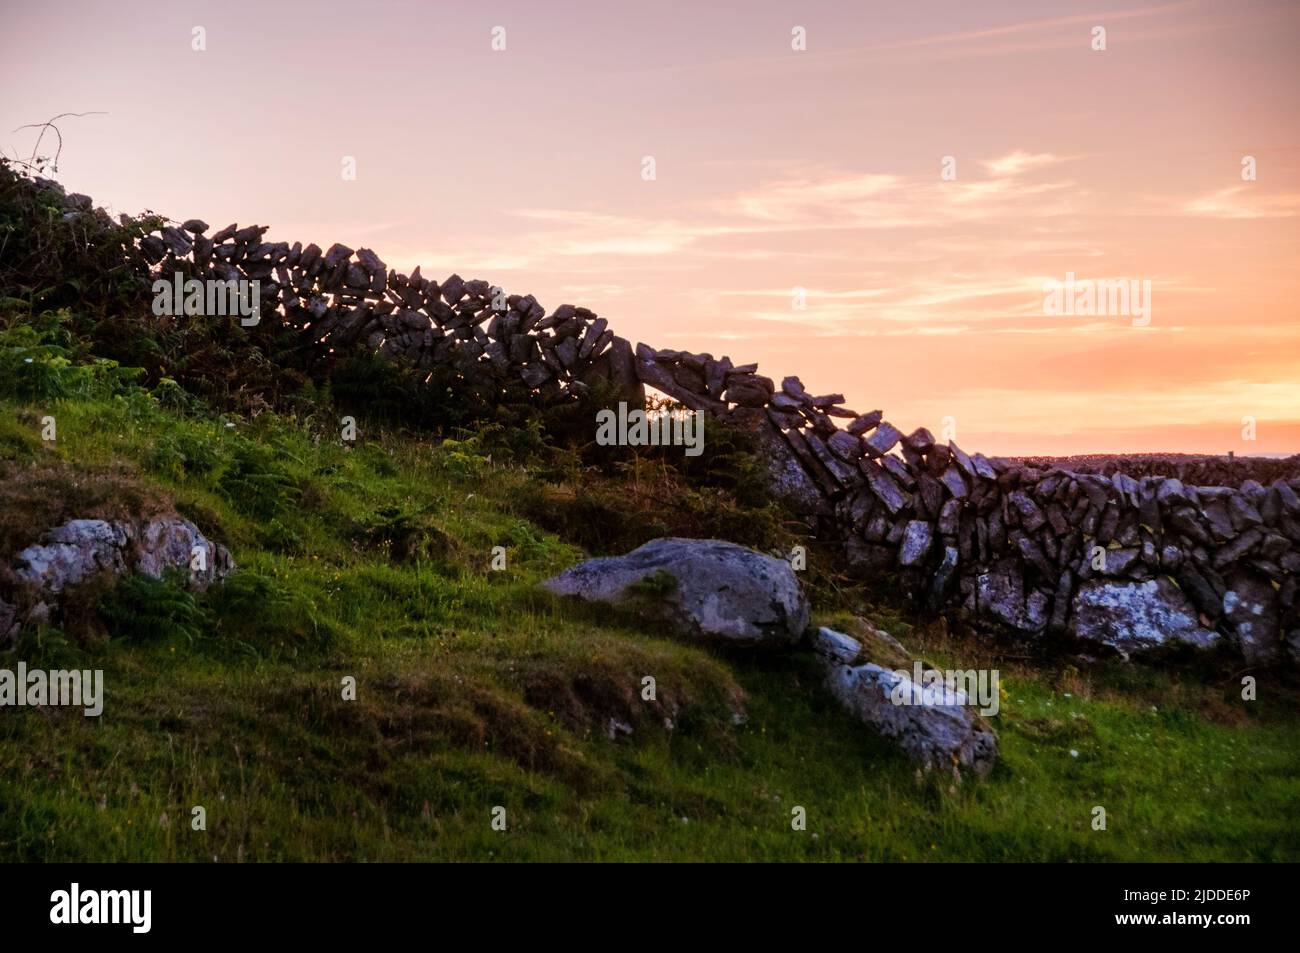 Las paredes de piedra se siluetaron contra una puesta de sol de finales de verano en la isla Aran de Inishmore en la bahía de Galway, Irlanda. Foto de stock